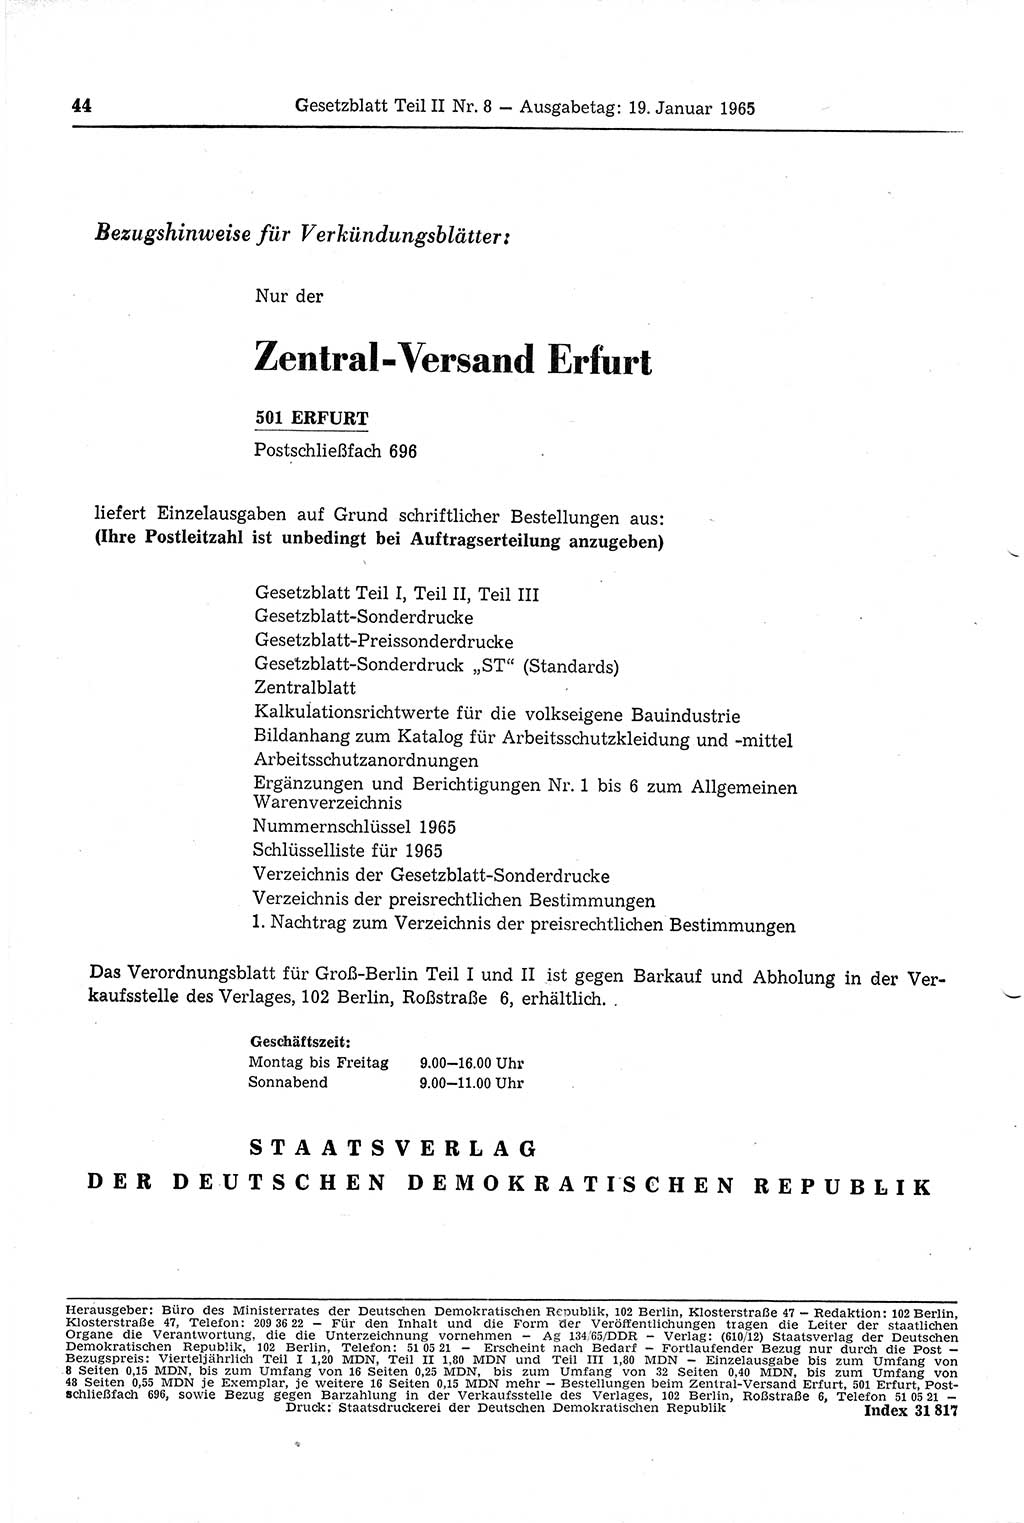 Gesetzblatt (GBl.) der Deutschen Demokratischen Republik (DDR) Teil ⅠⅠ 1965, Seite 44 (GBl. DDR ⅠⅠ 1965, S. 44)